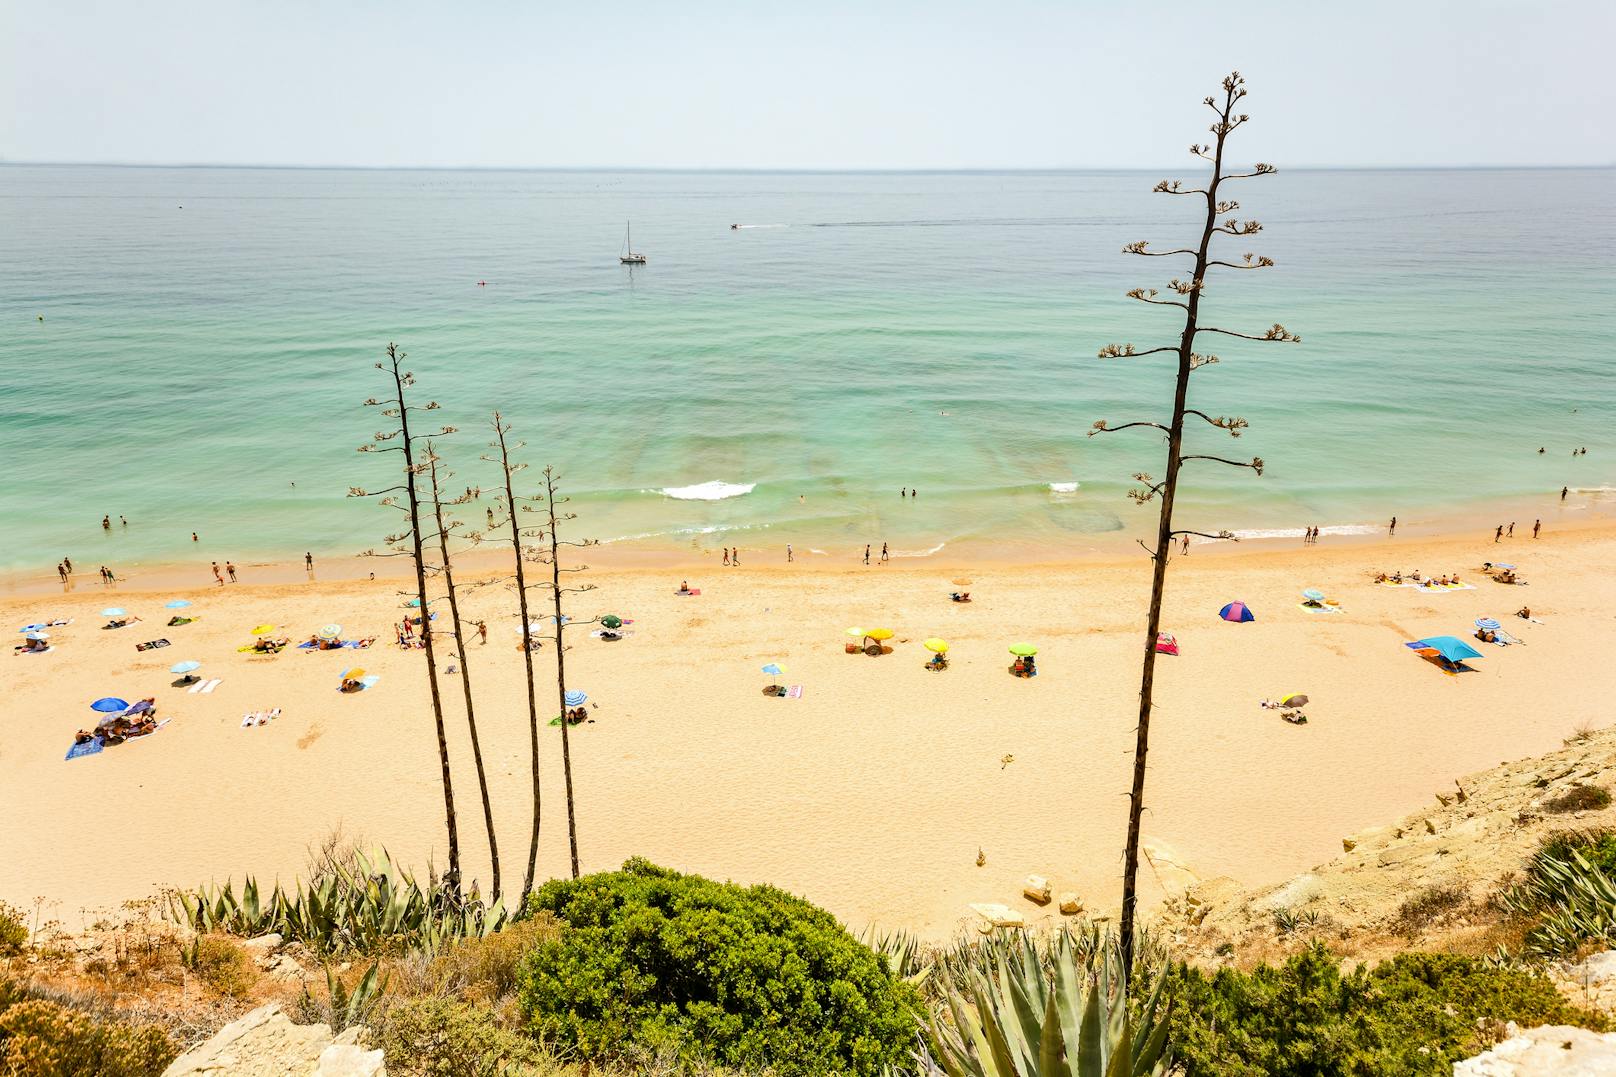 <strong>7. Meia Praia, Algarve, Portugal:</strong>&nbsp;Der dritte Strand aus Portugal, diesmal an der Algarve. Er liegt in der Stadt Lagos, die eine der am wenigsten von der Pandemie betroffenen Städte der Region ist. Der von Felsklippen umgebene Strand Meia Praia ist mit fünf Kilometern der längste Strand der Stadt und mit seinem goldenen Sand sicher einer der schönsten. Auch hier heißt es ab 1. Juli: Hallo Urlauber!